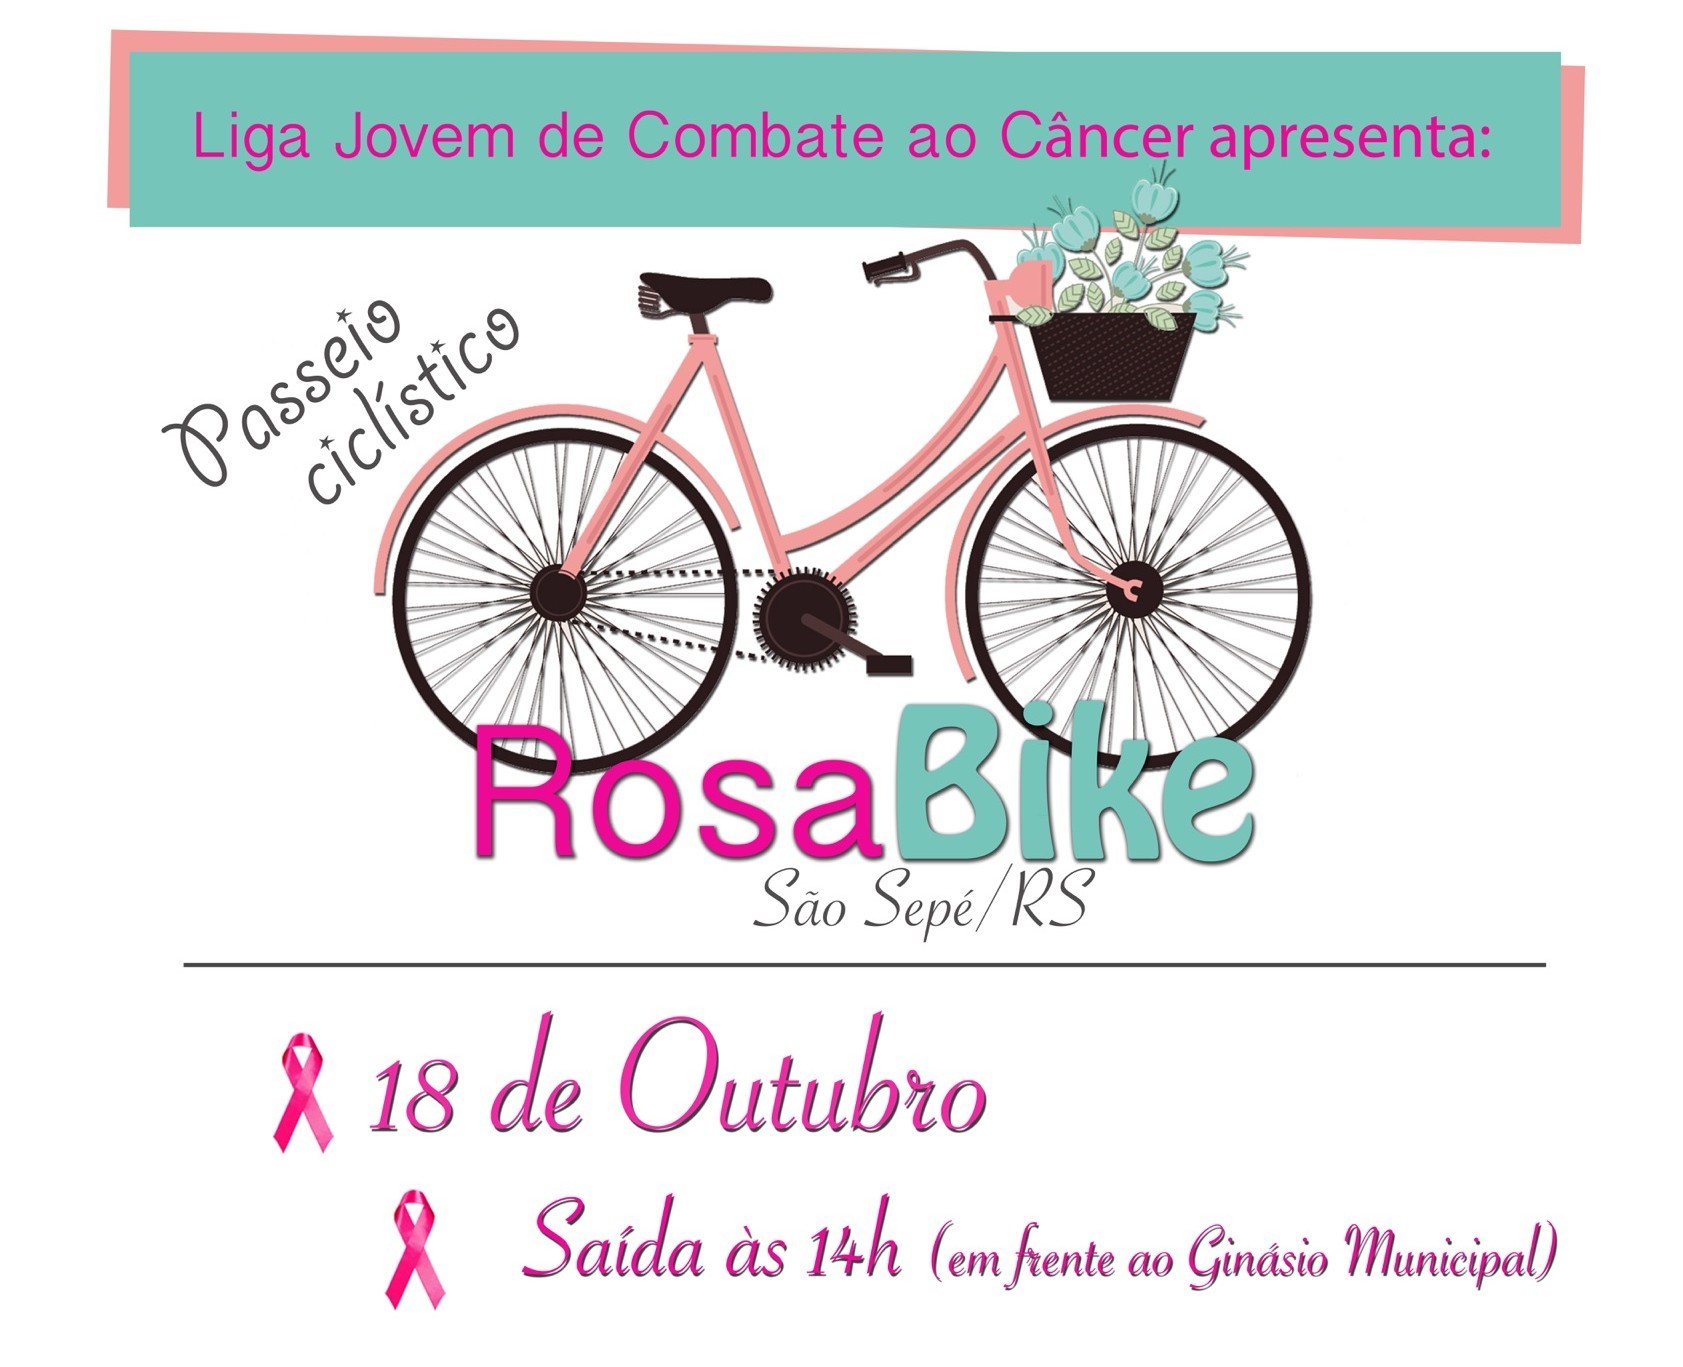 Liga Feminina de Combate ao Câncer vai promover passeio ciclístico dia 18